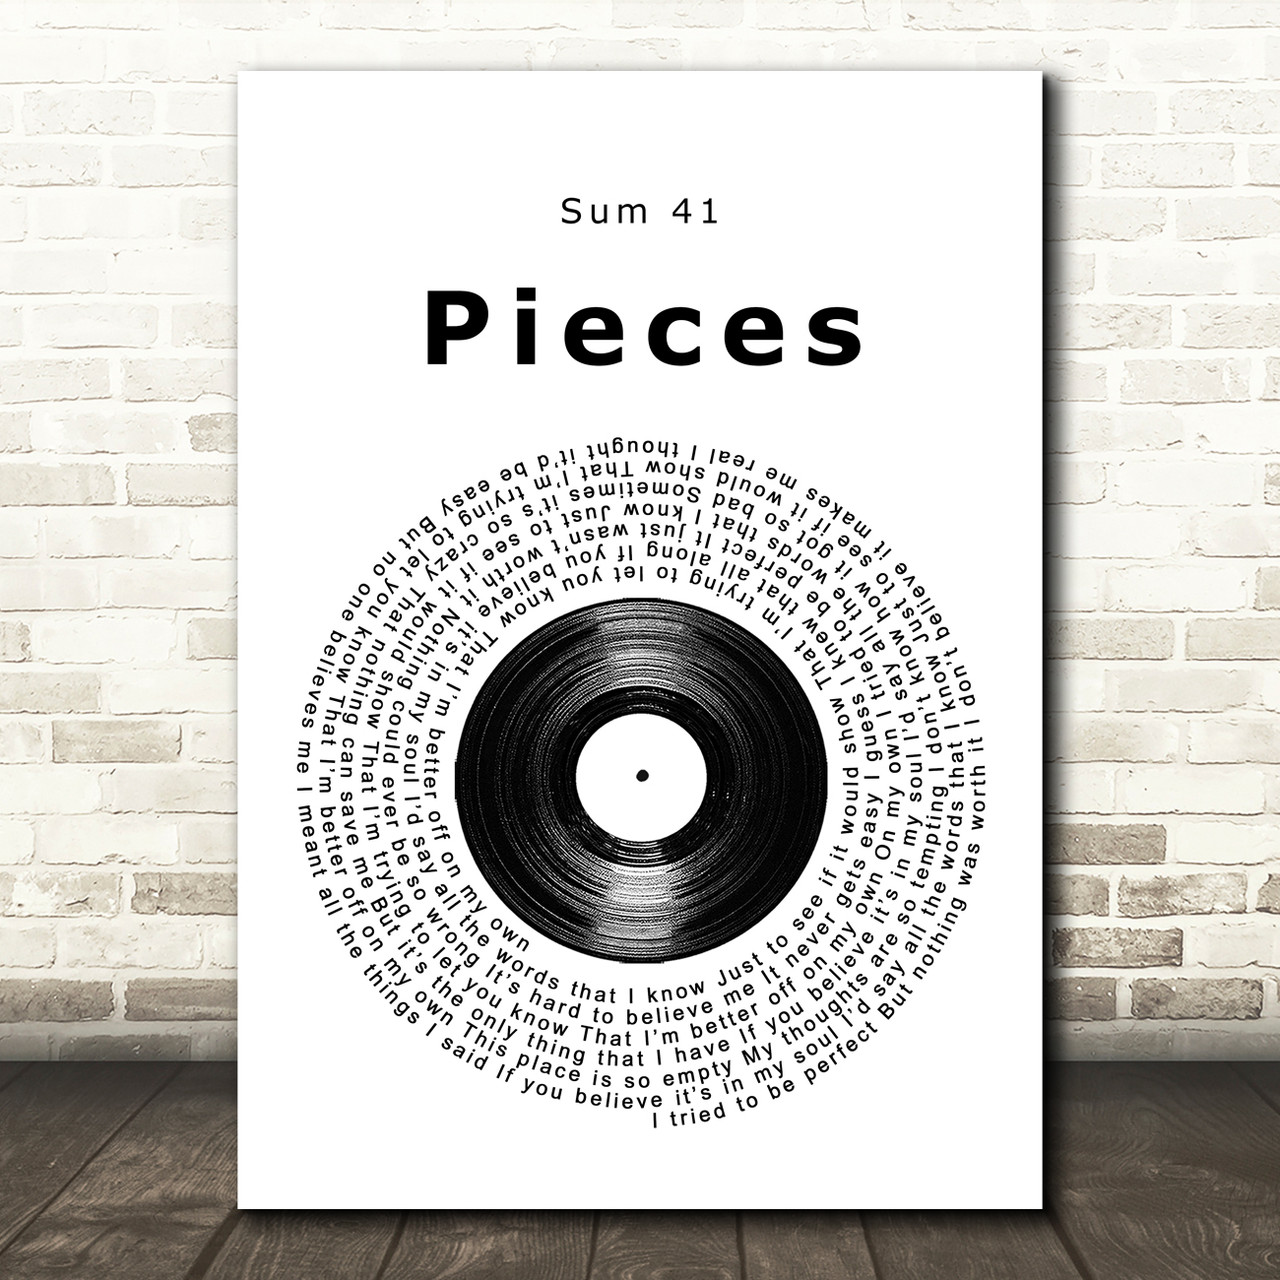 Pieces — Sum 41